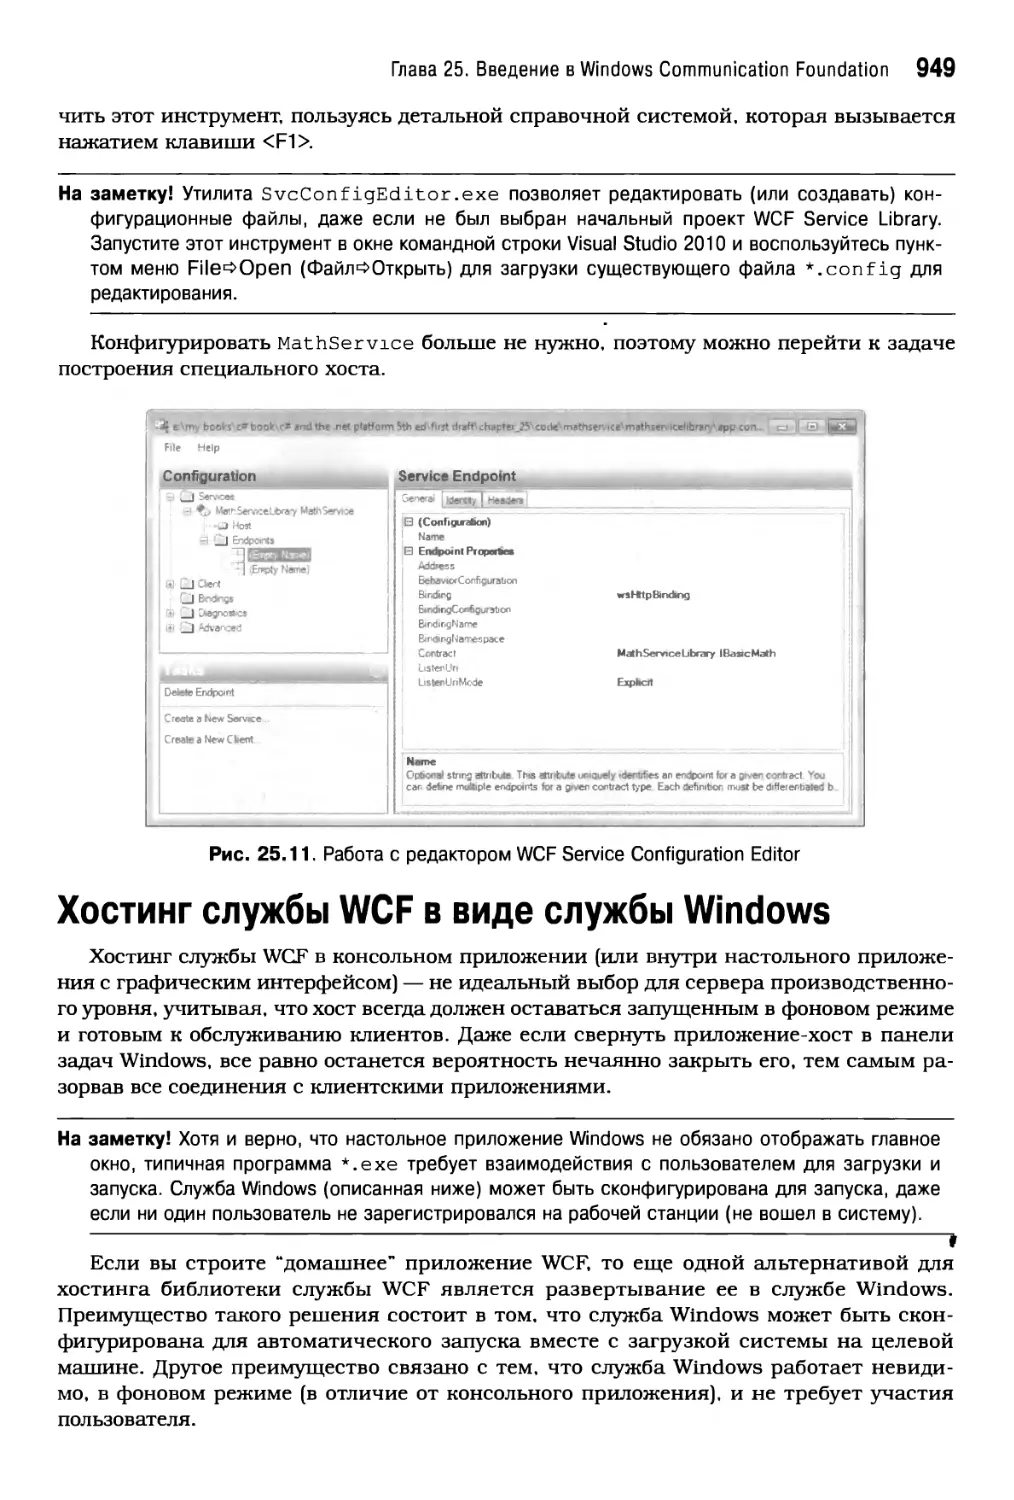 Хостинг службы WCF в виде службы Windows